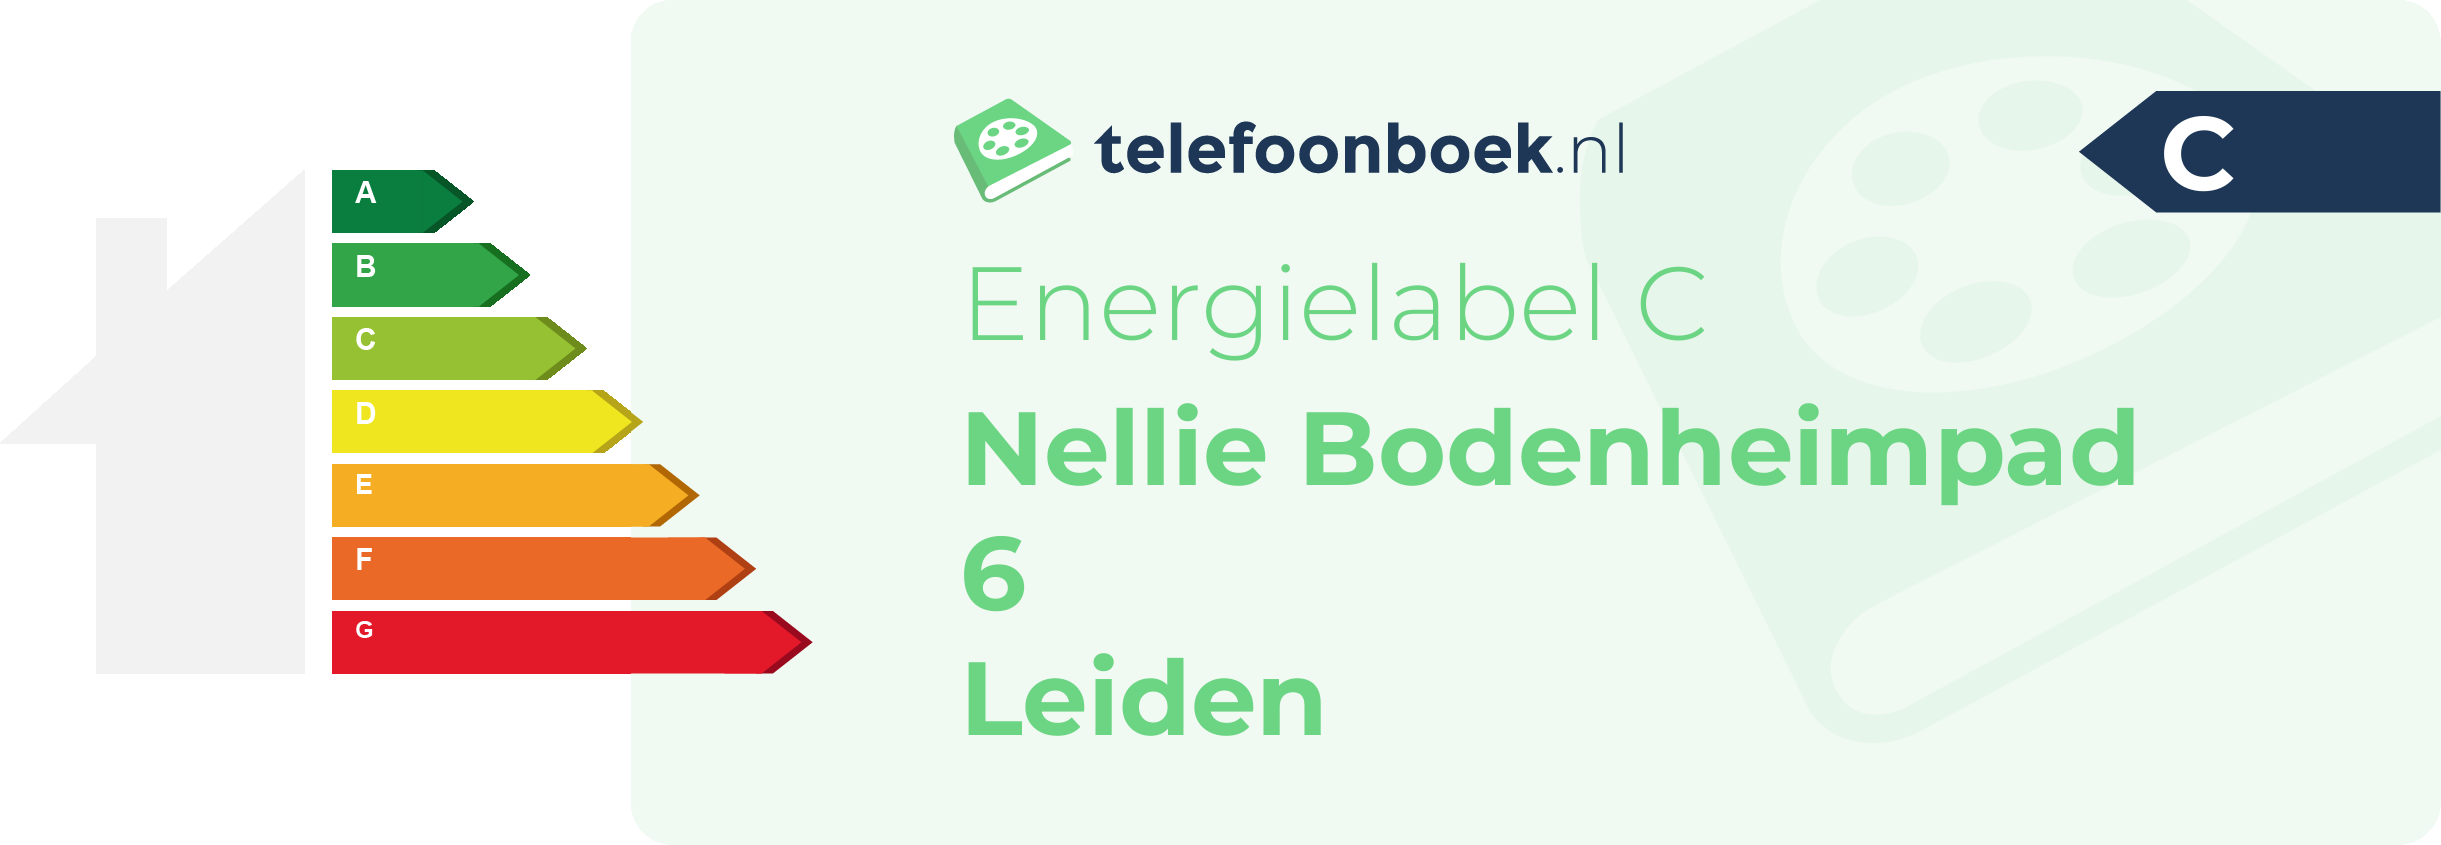 Energielabel Nellie Bodenheimpad 6 Leiden